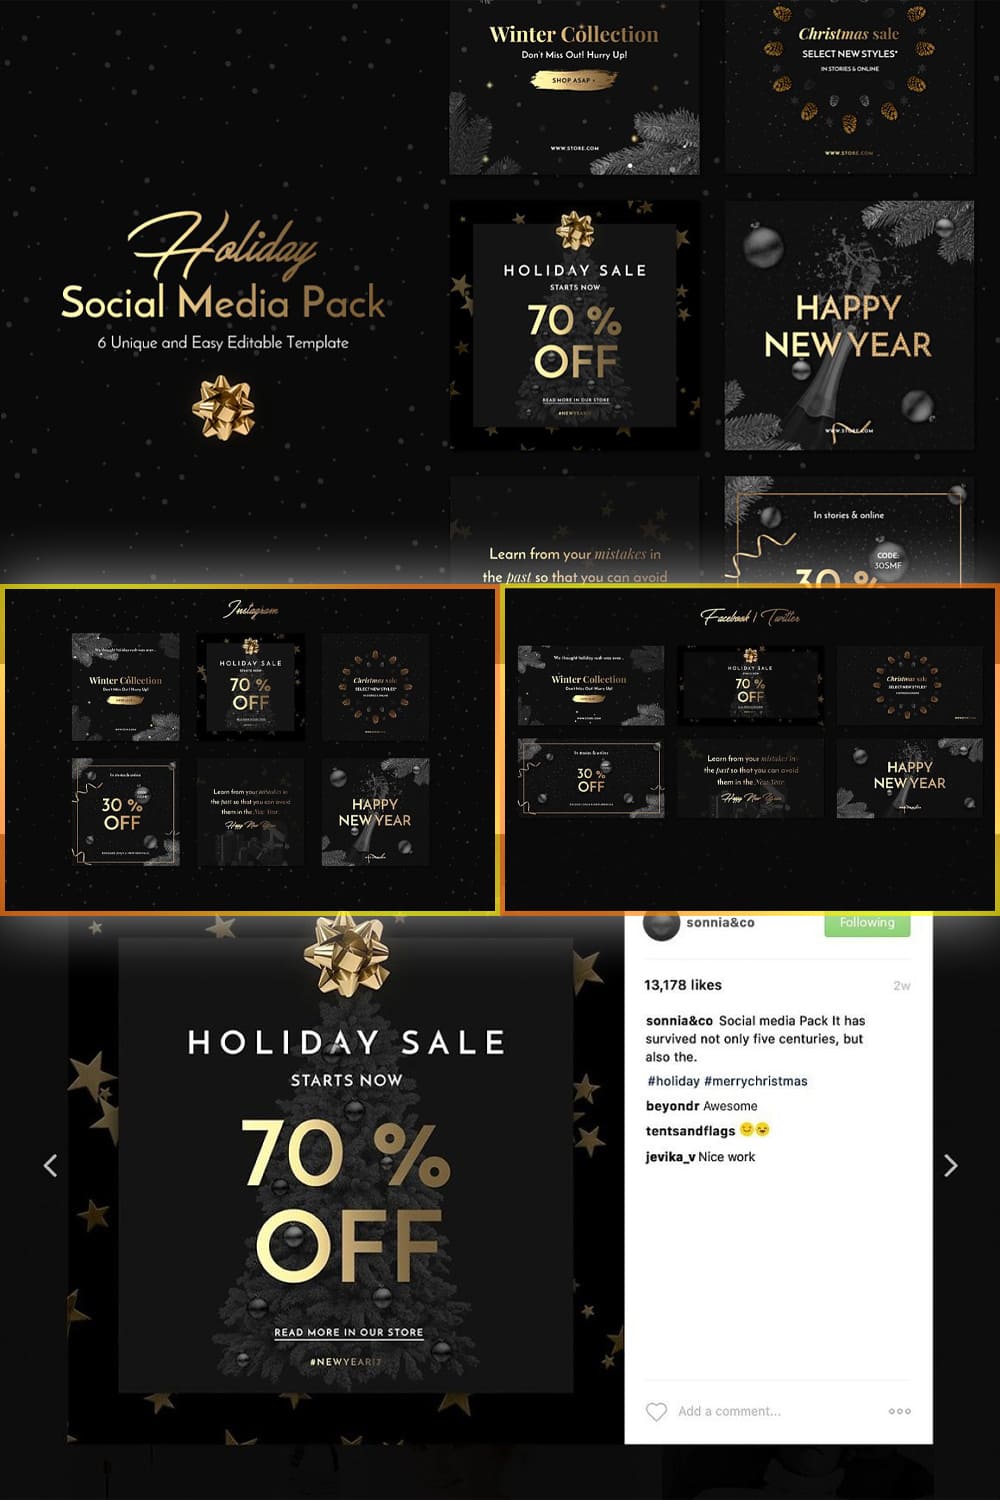 Holiday Social Media Pack - Pinterest.